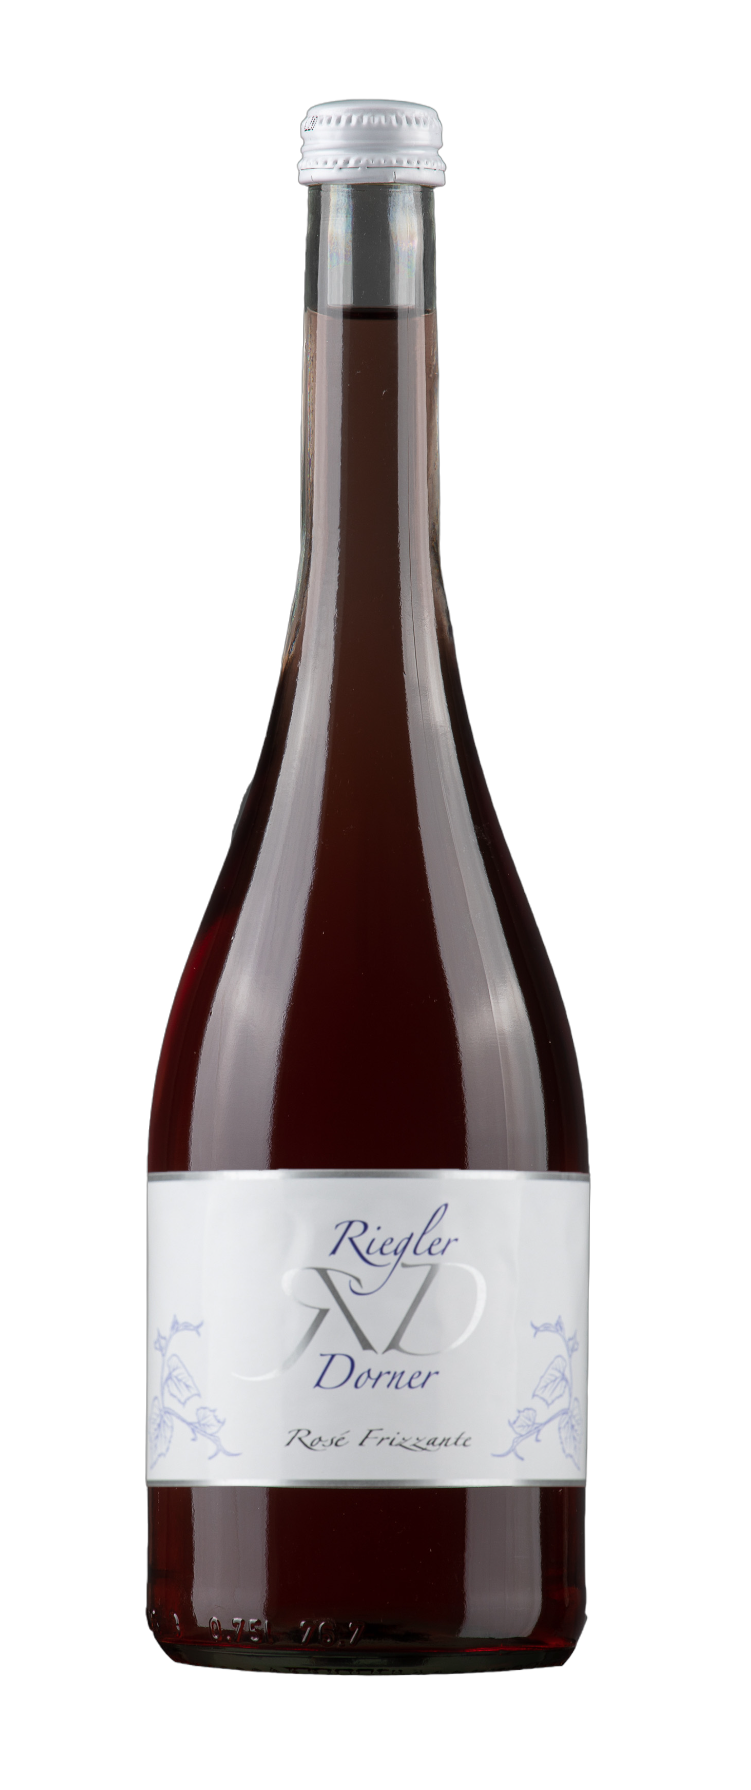 Weinbau Riegler-Dorner Produkt-Beispiele Rosé Frizzante